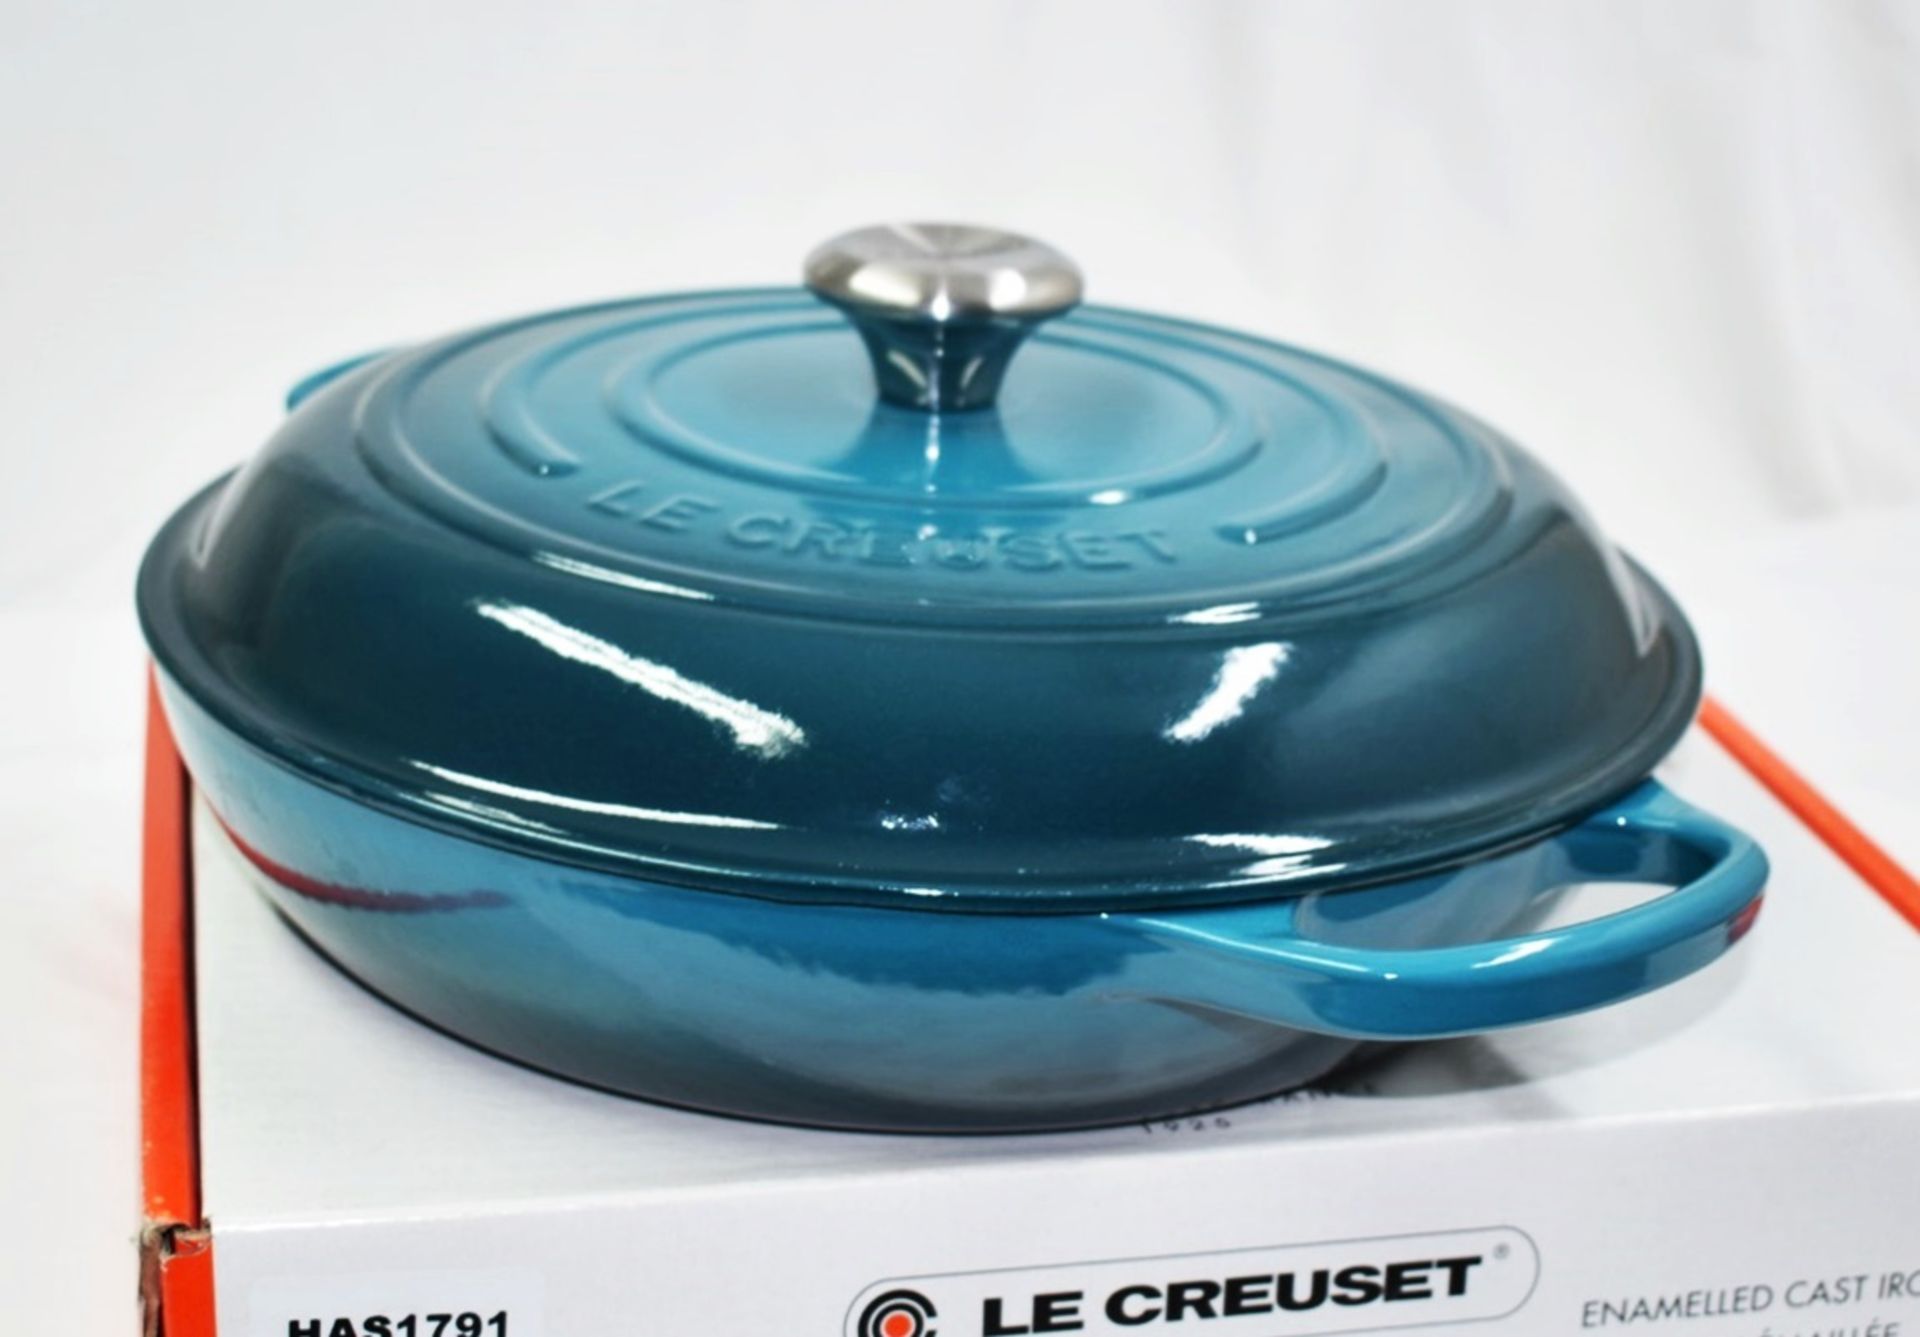 1 x LE CREUSET 'Signature' Enamelled Cast Iron Shallow Casserole Dish (30cm) - Original RRP £270.00 - Image 2 of 17